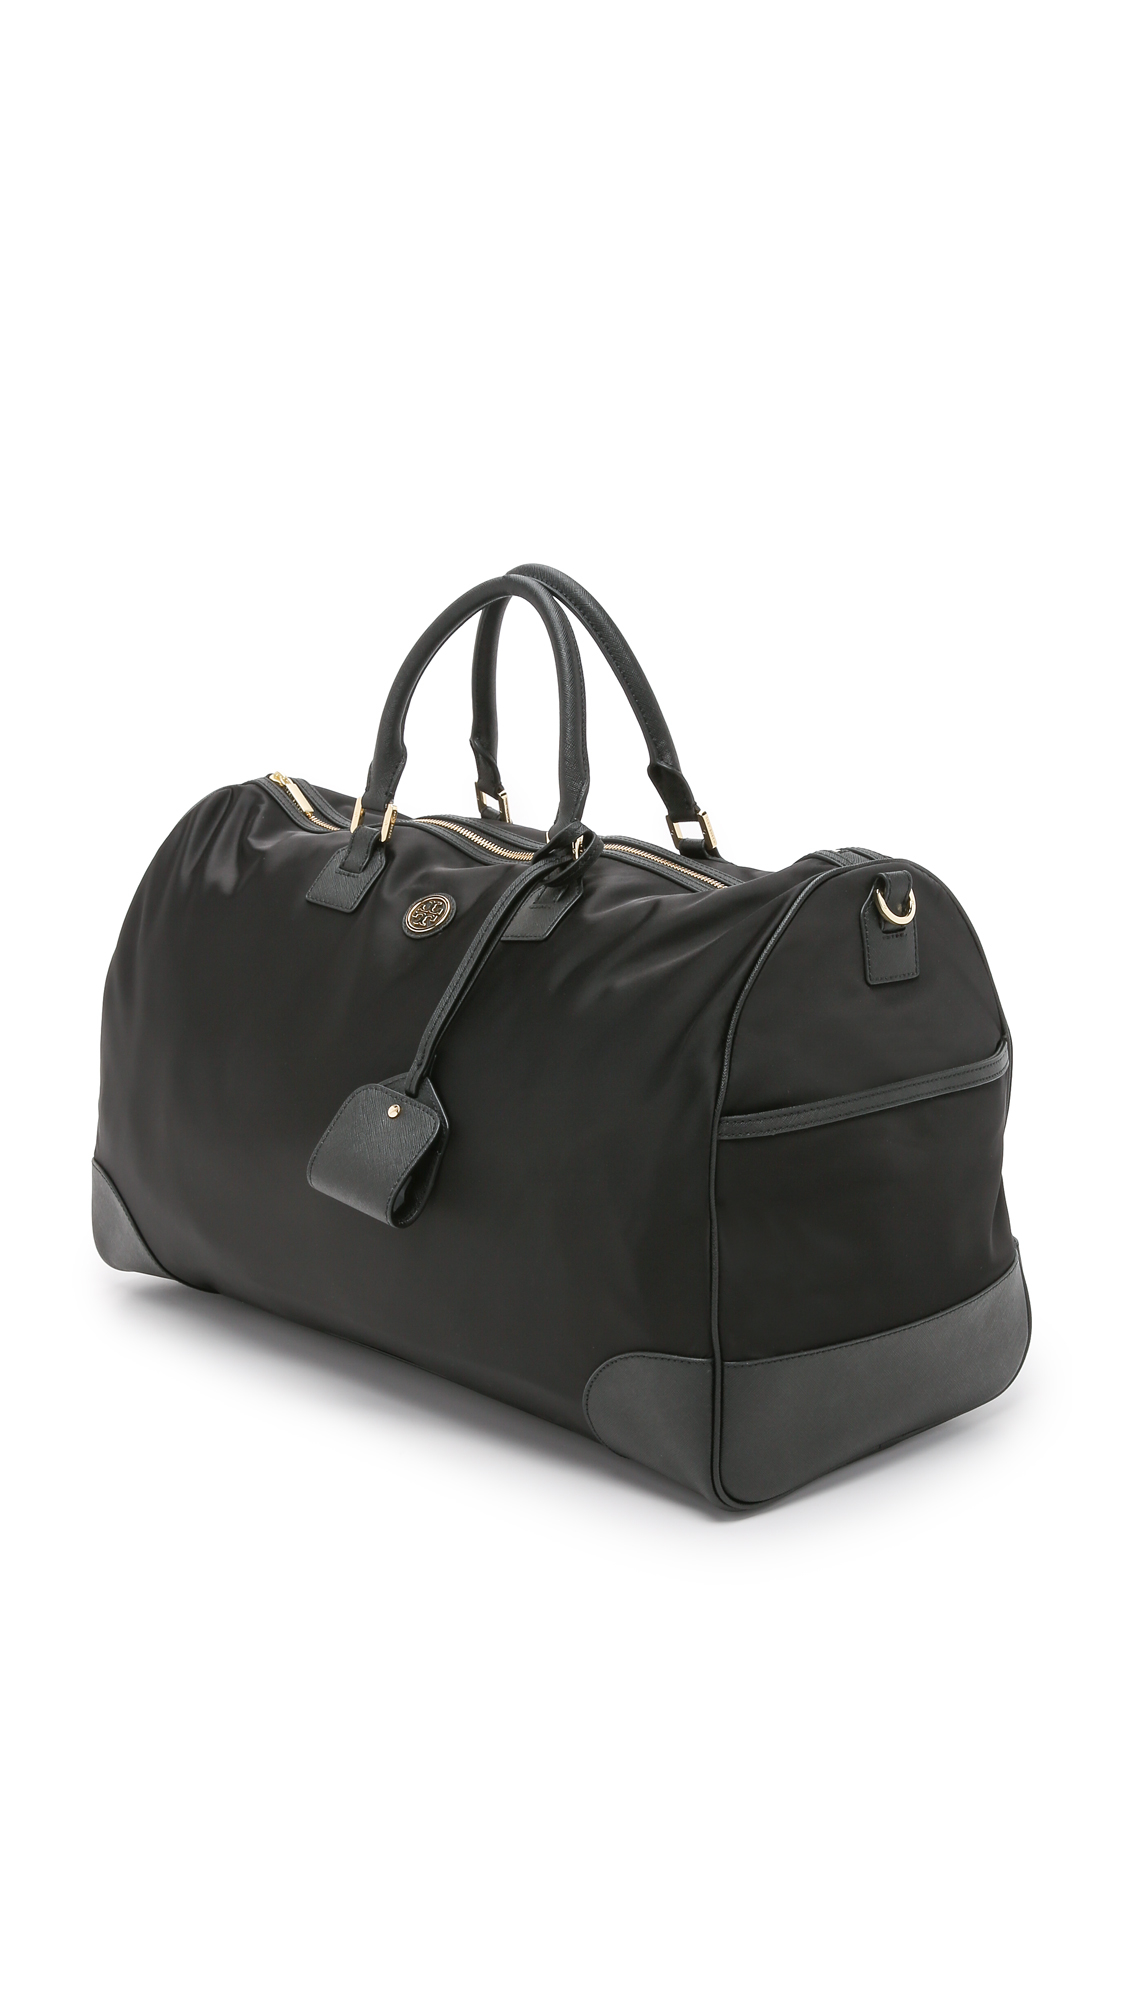 Tory Burch Duffle Bags & Handbags for Women for sale